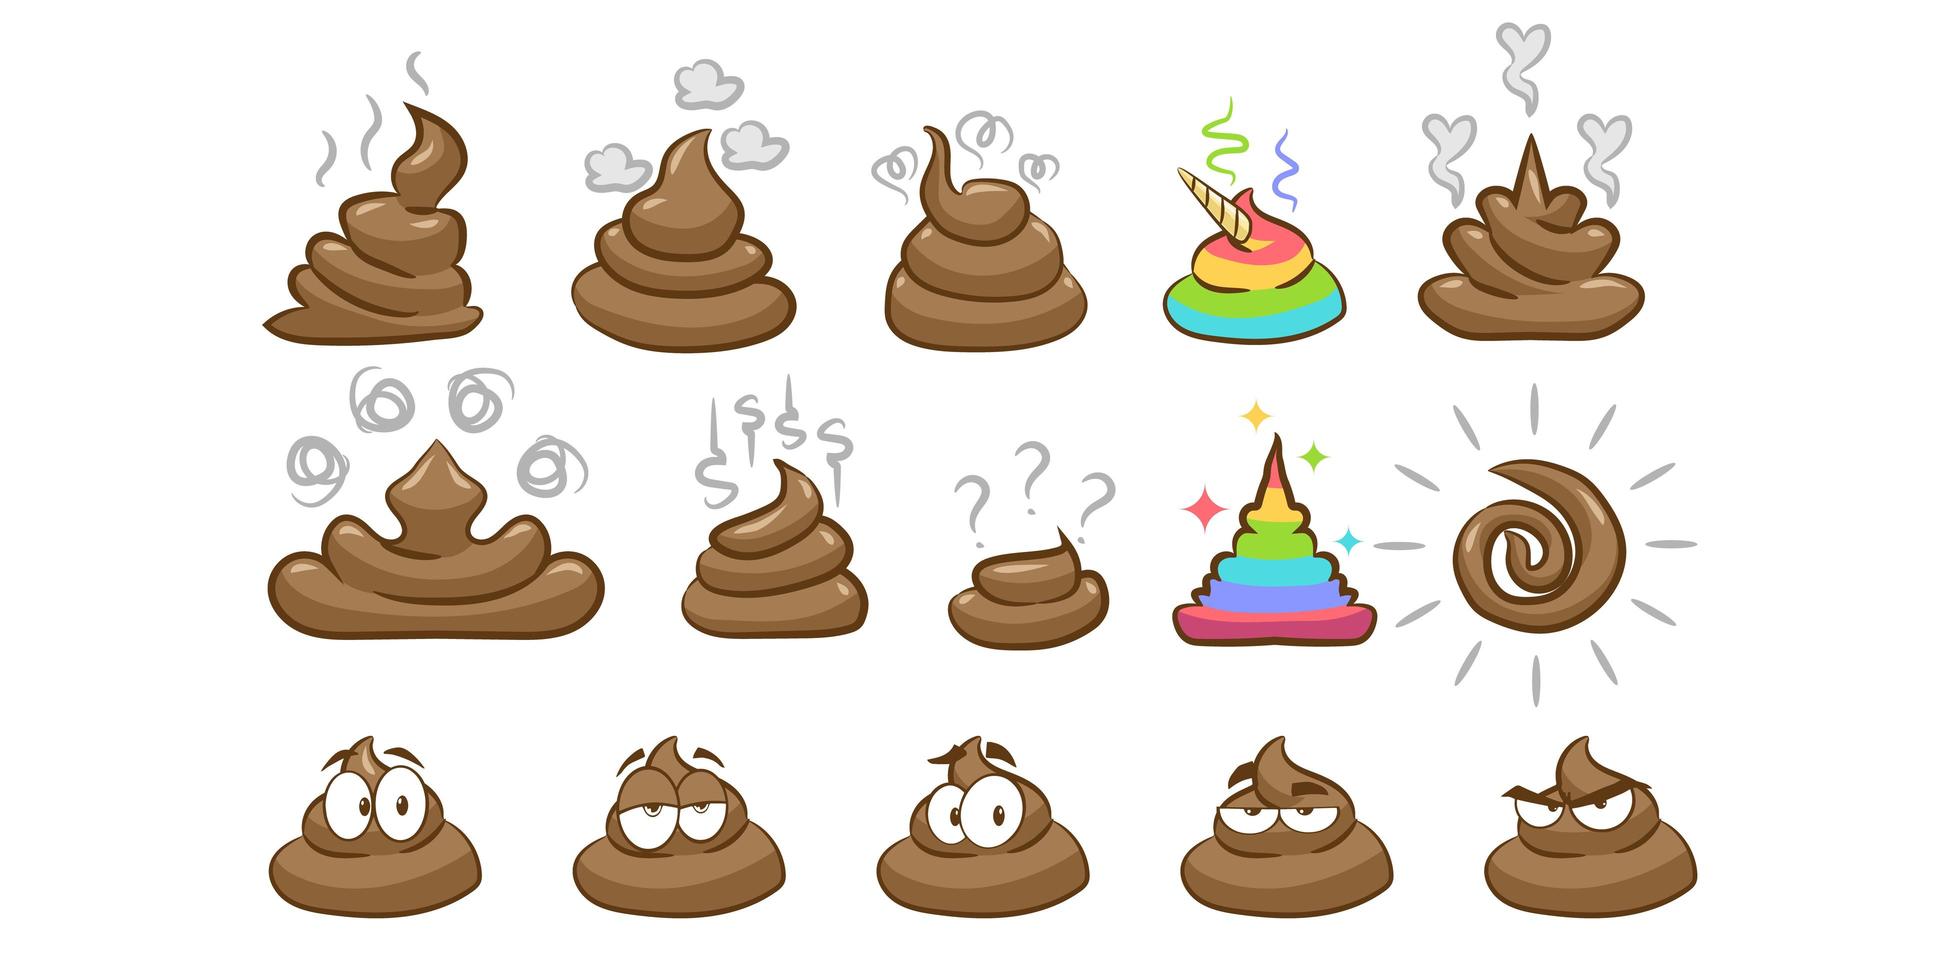 Imagen ilustrativa de poo emoji en diferentes formas